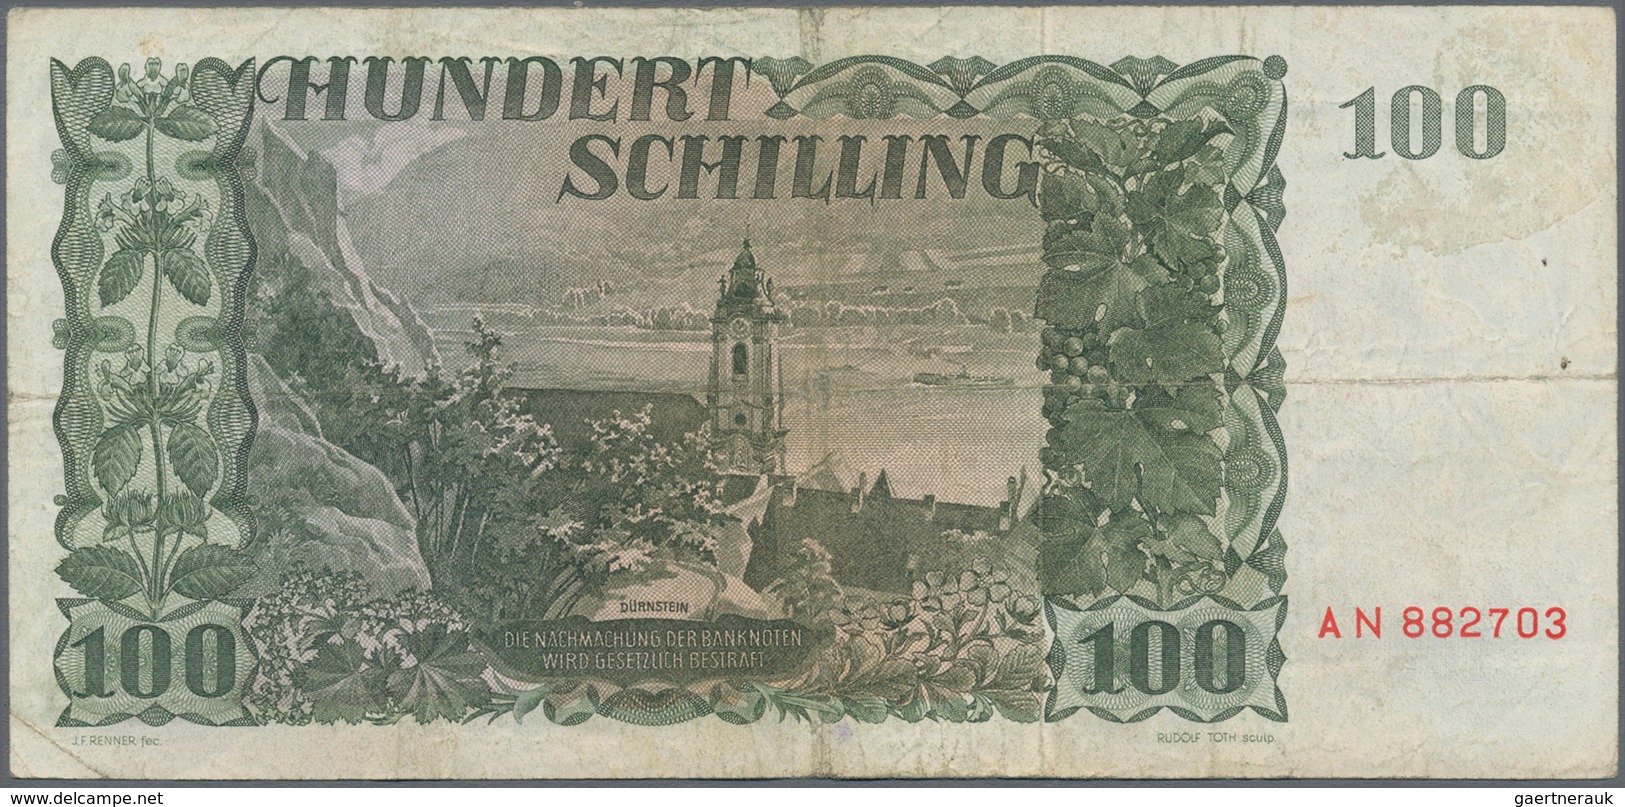 Austria / Österreich: Very nice set with 8 banknotes comprising 10 Schilling 1950 P.128 (F-), 50 Sch